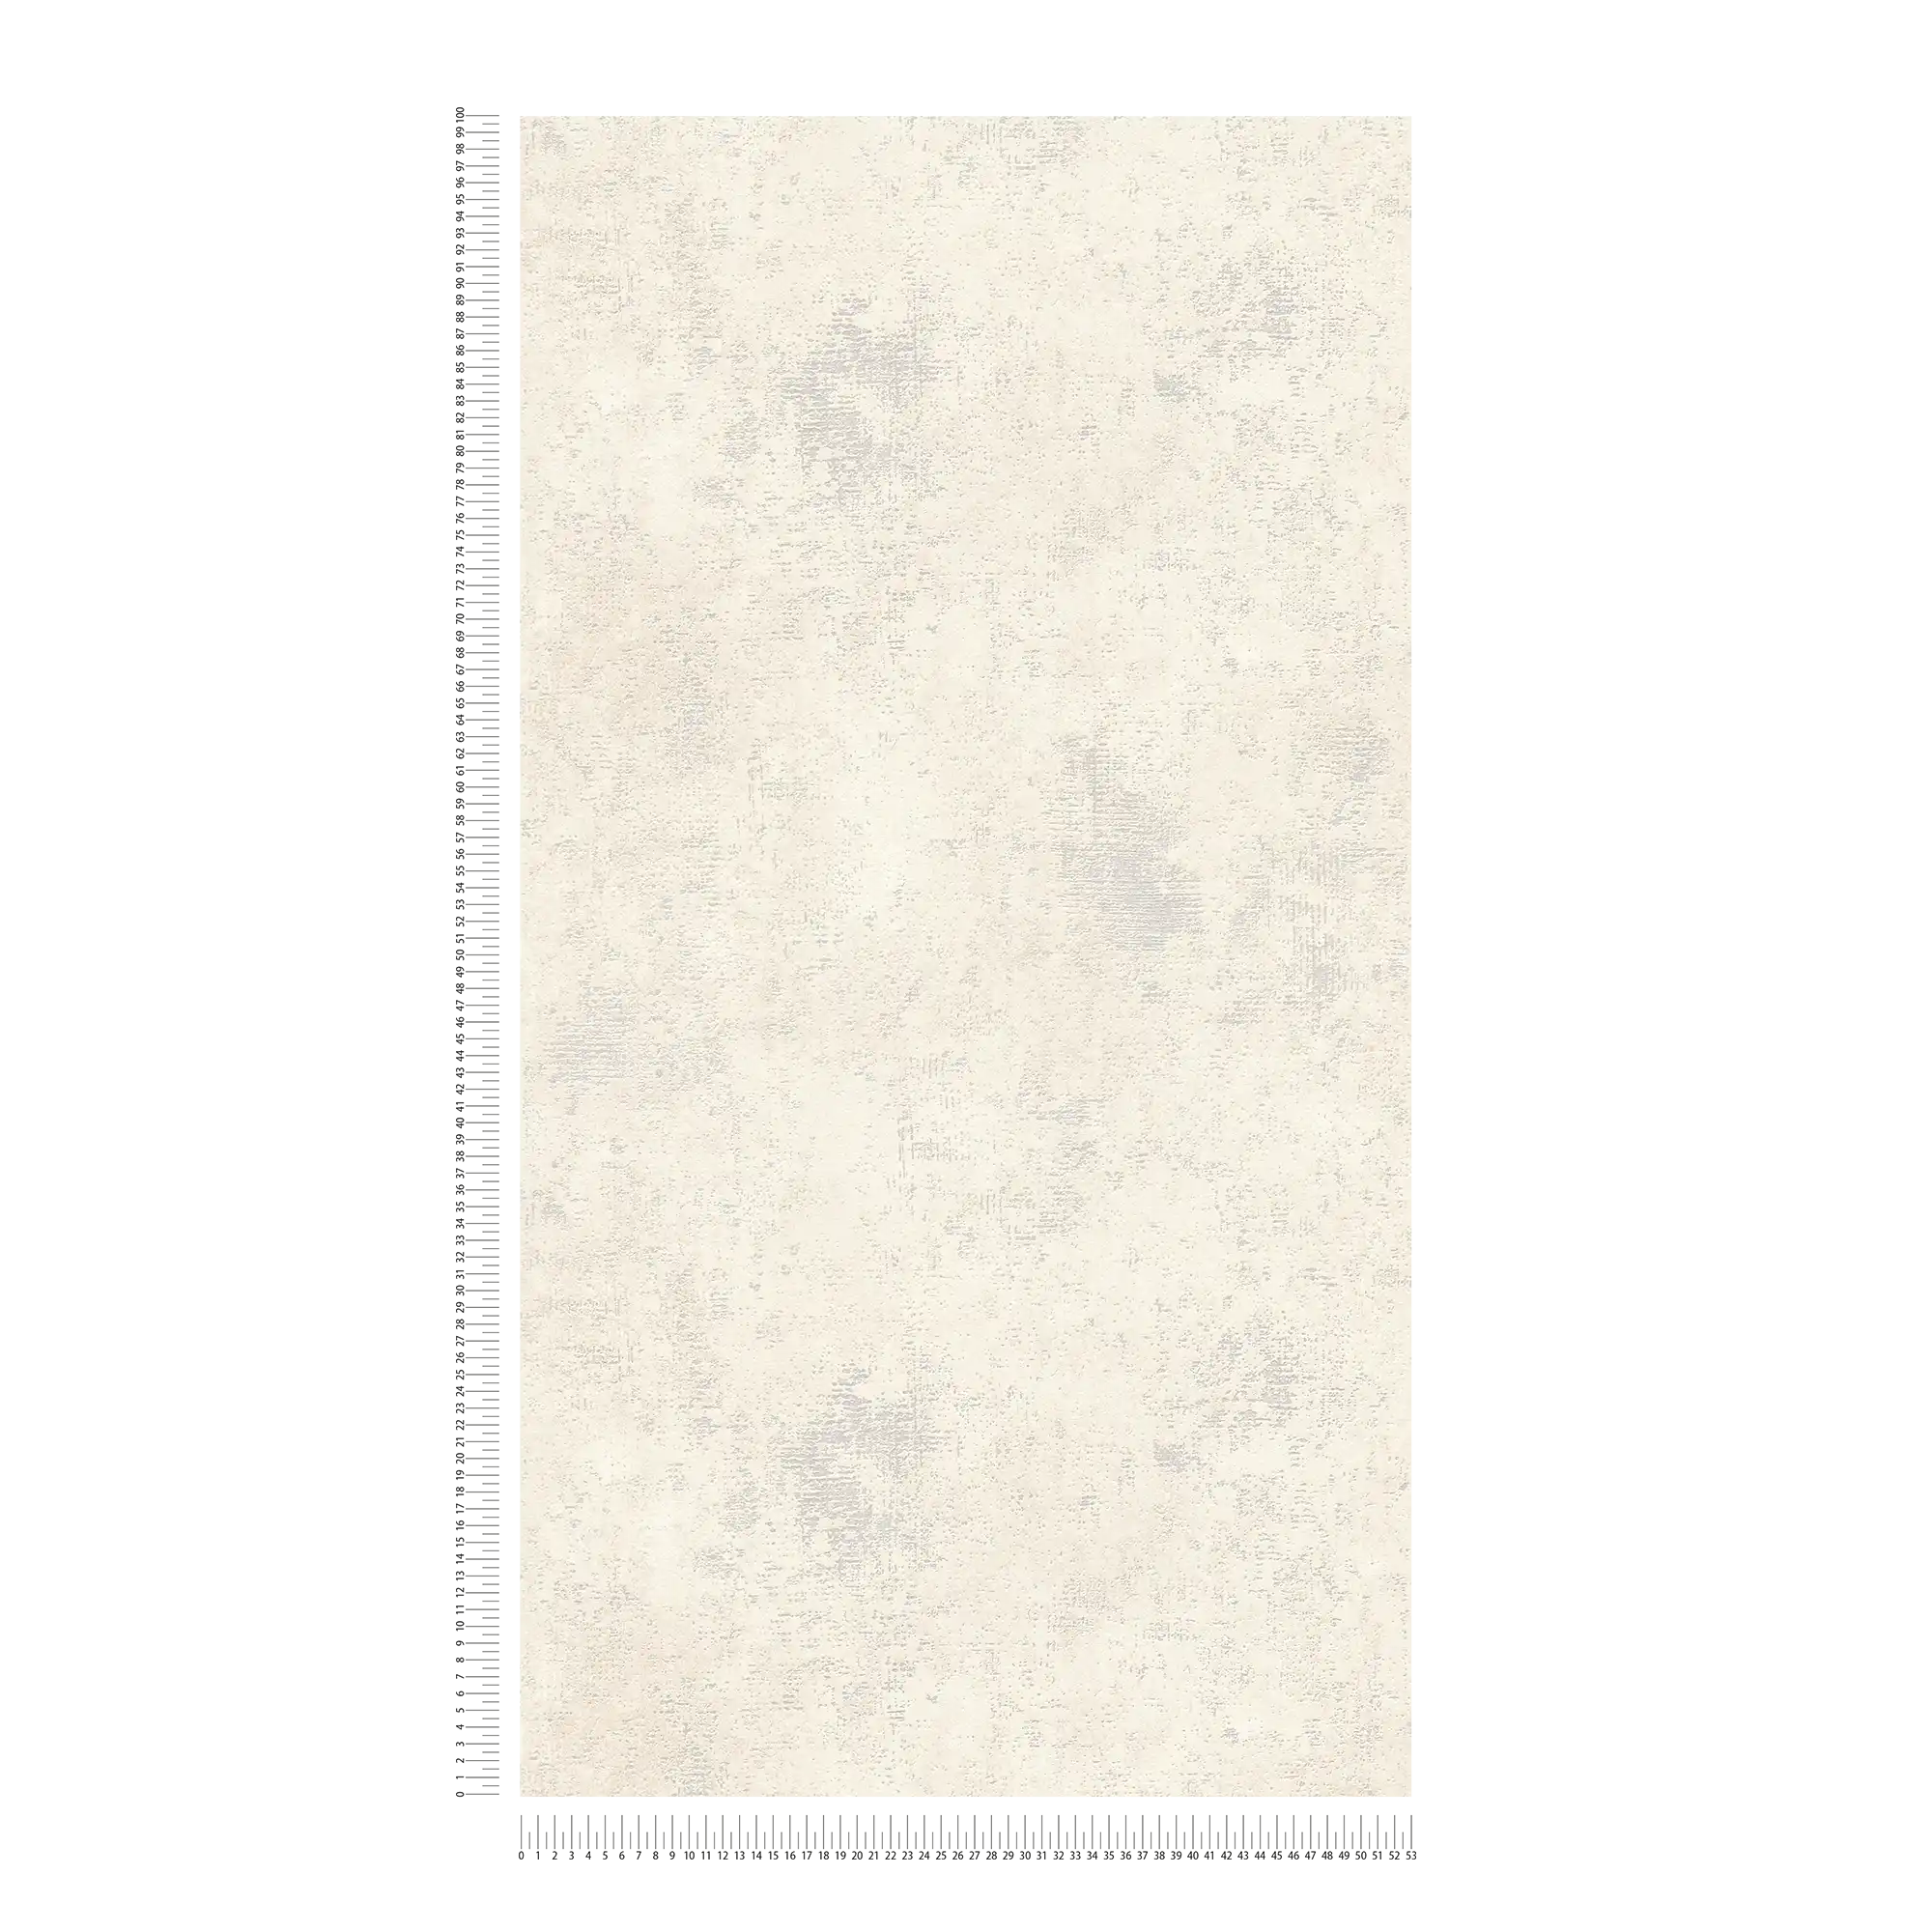             Carta da parati in tessuto non tessuto color crema con motivo testurizzato effetto gesso
        